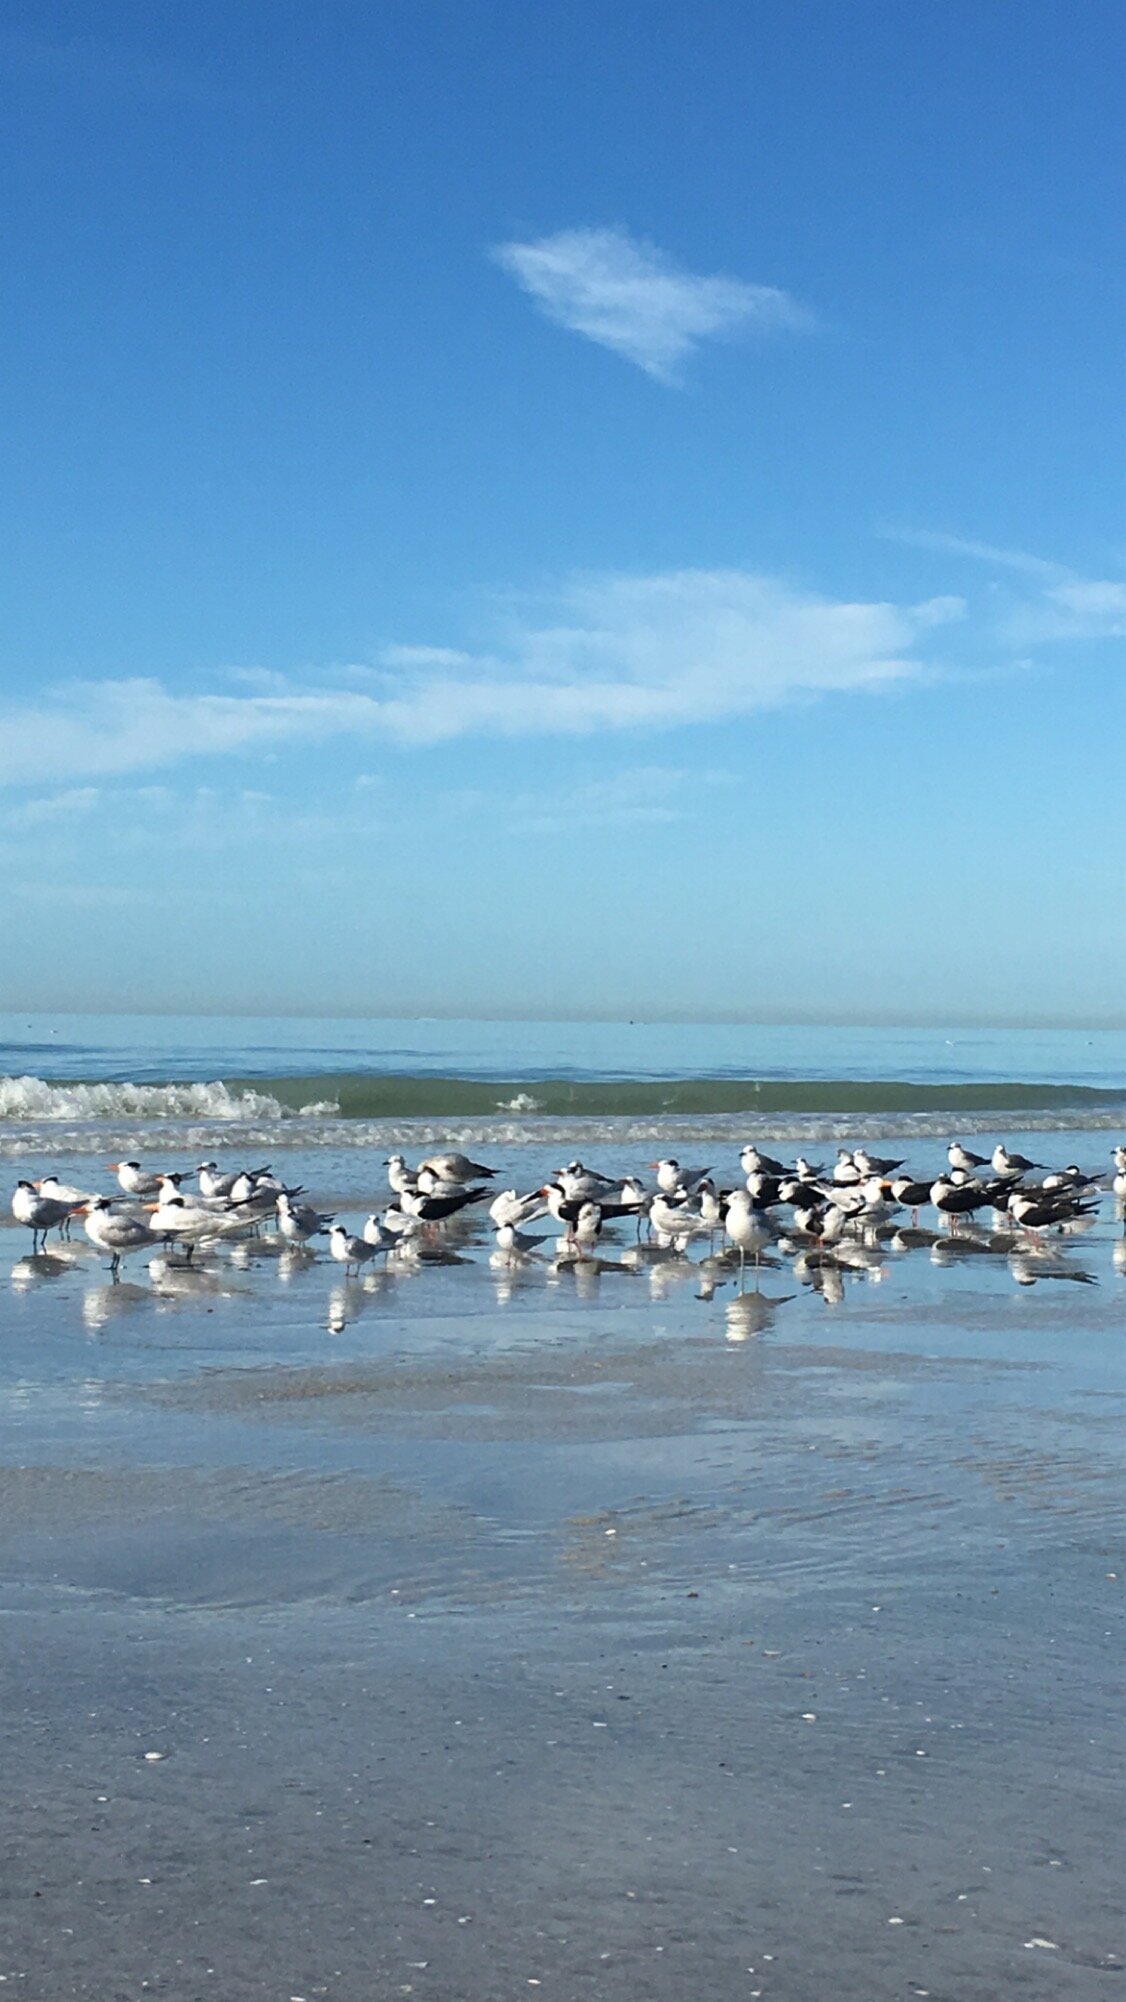 Cheydrea_Birds on the Beach